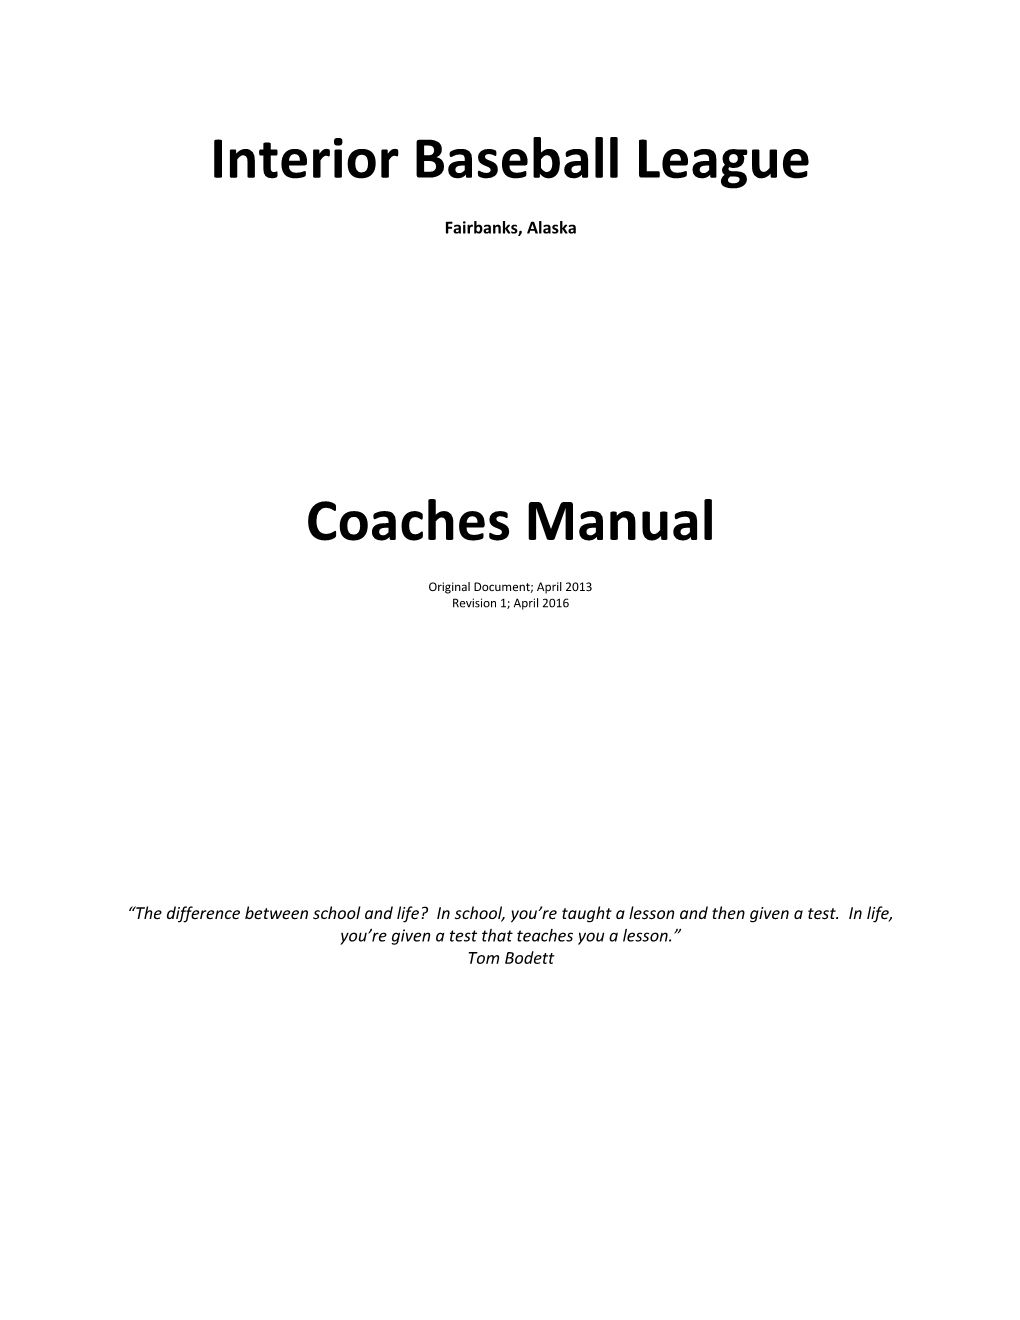 Interior Baseball League Coaches Manual